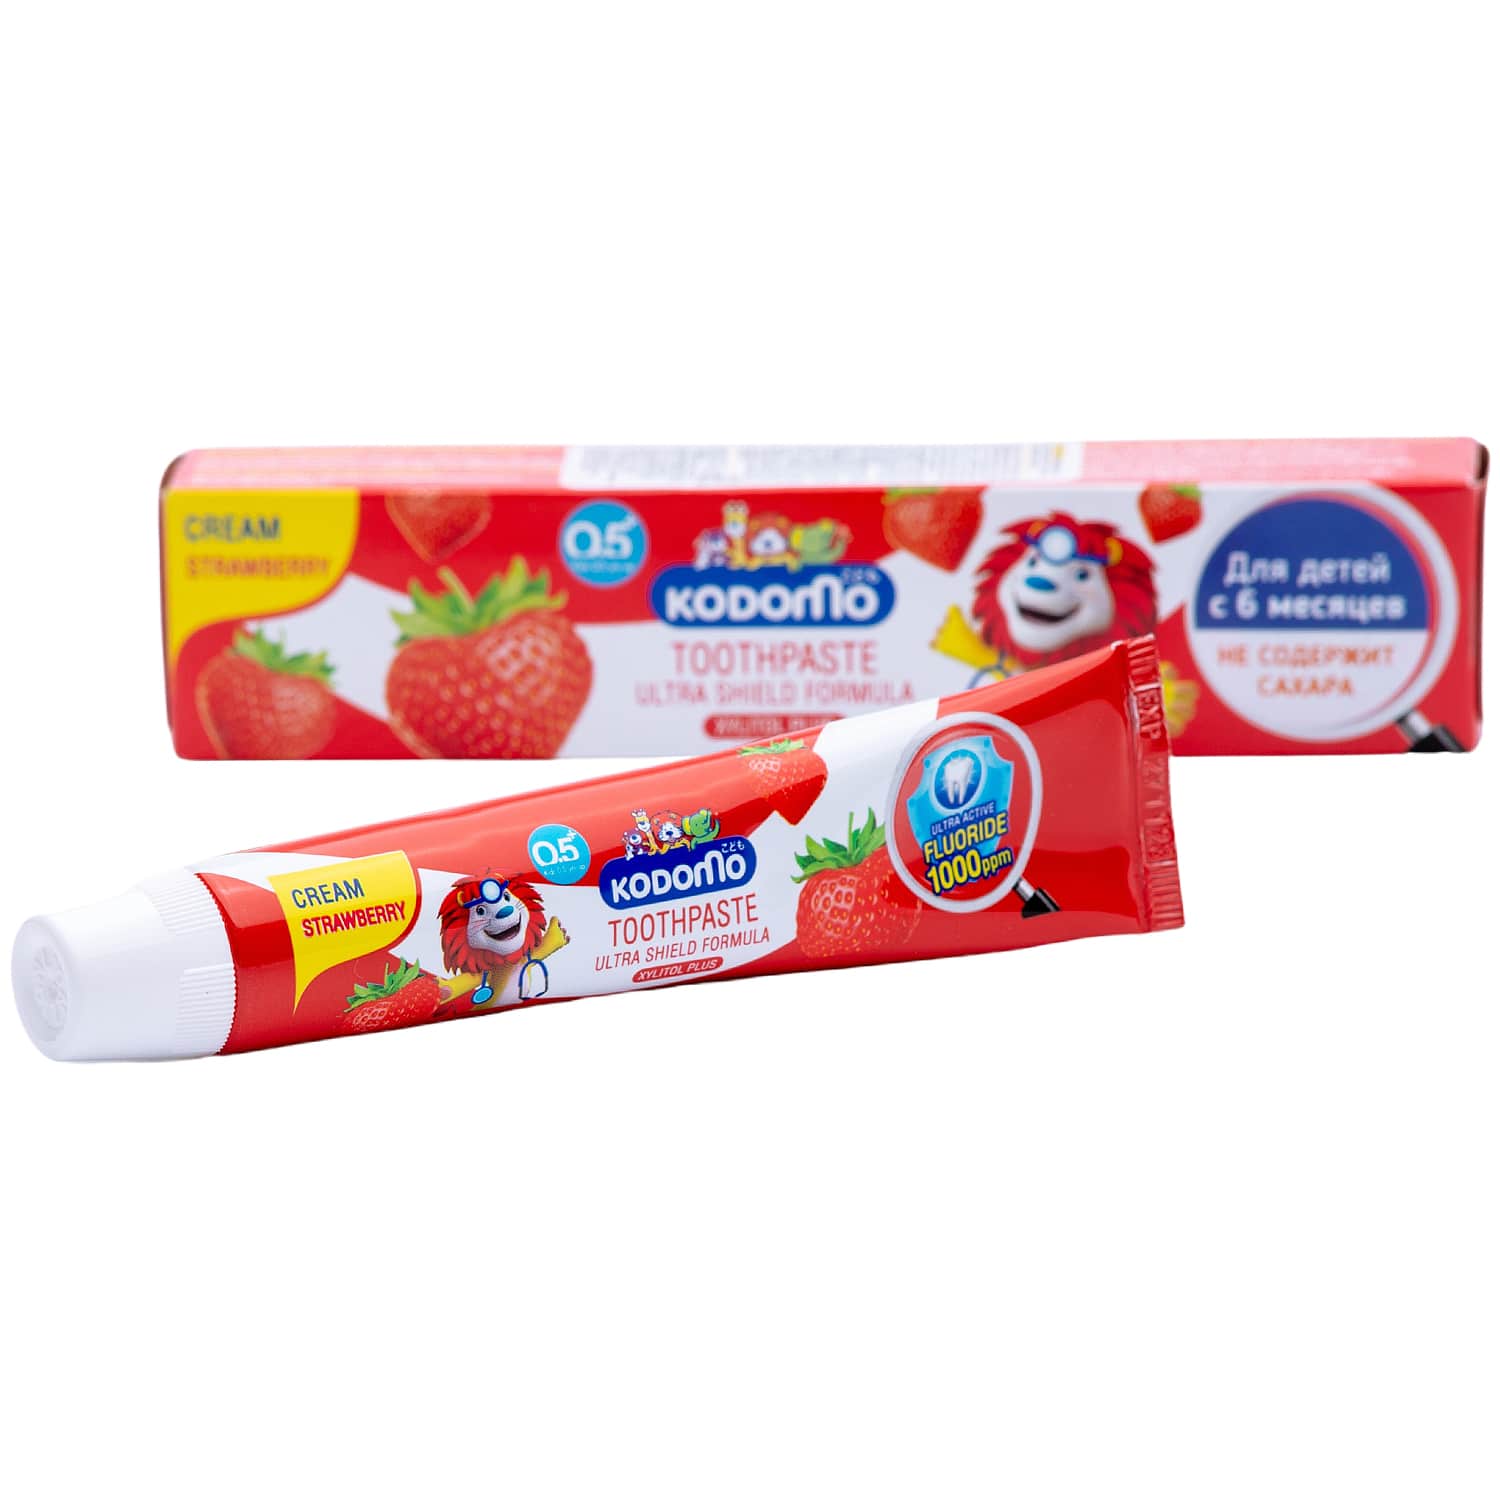 Lion Thailand Зубная паста для детей с 6 месяцев с ароматом клубники, 40 г (Lion Thailand, Kodomo)